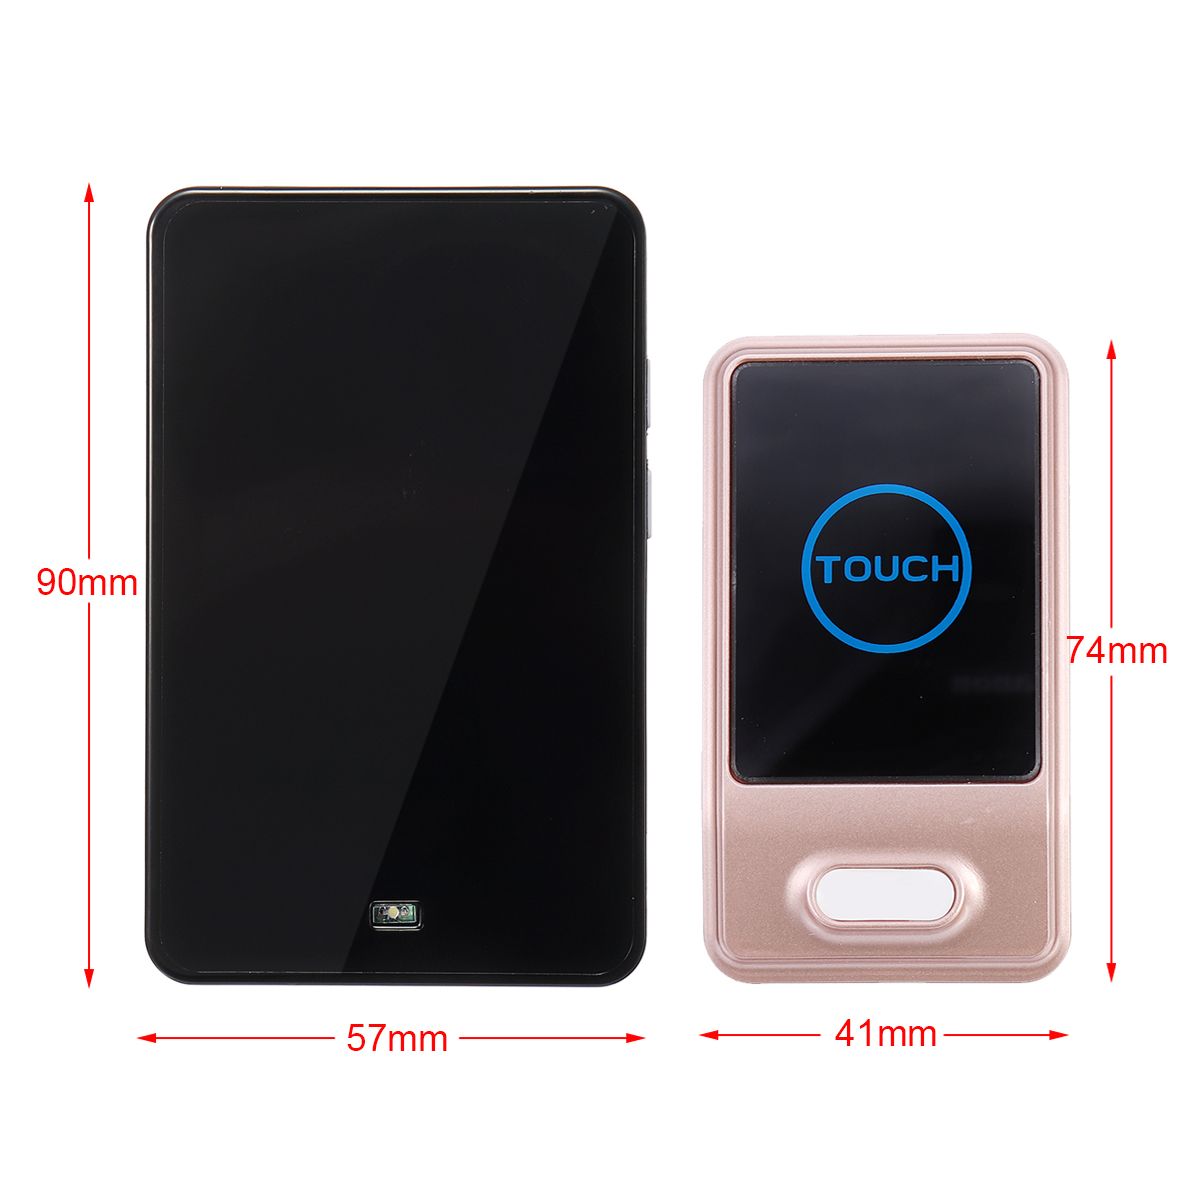 Battery-Wireless-Door-Bell-Security-Chime-Alarm-Smart-Doorbell-Plug-In-1370222